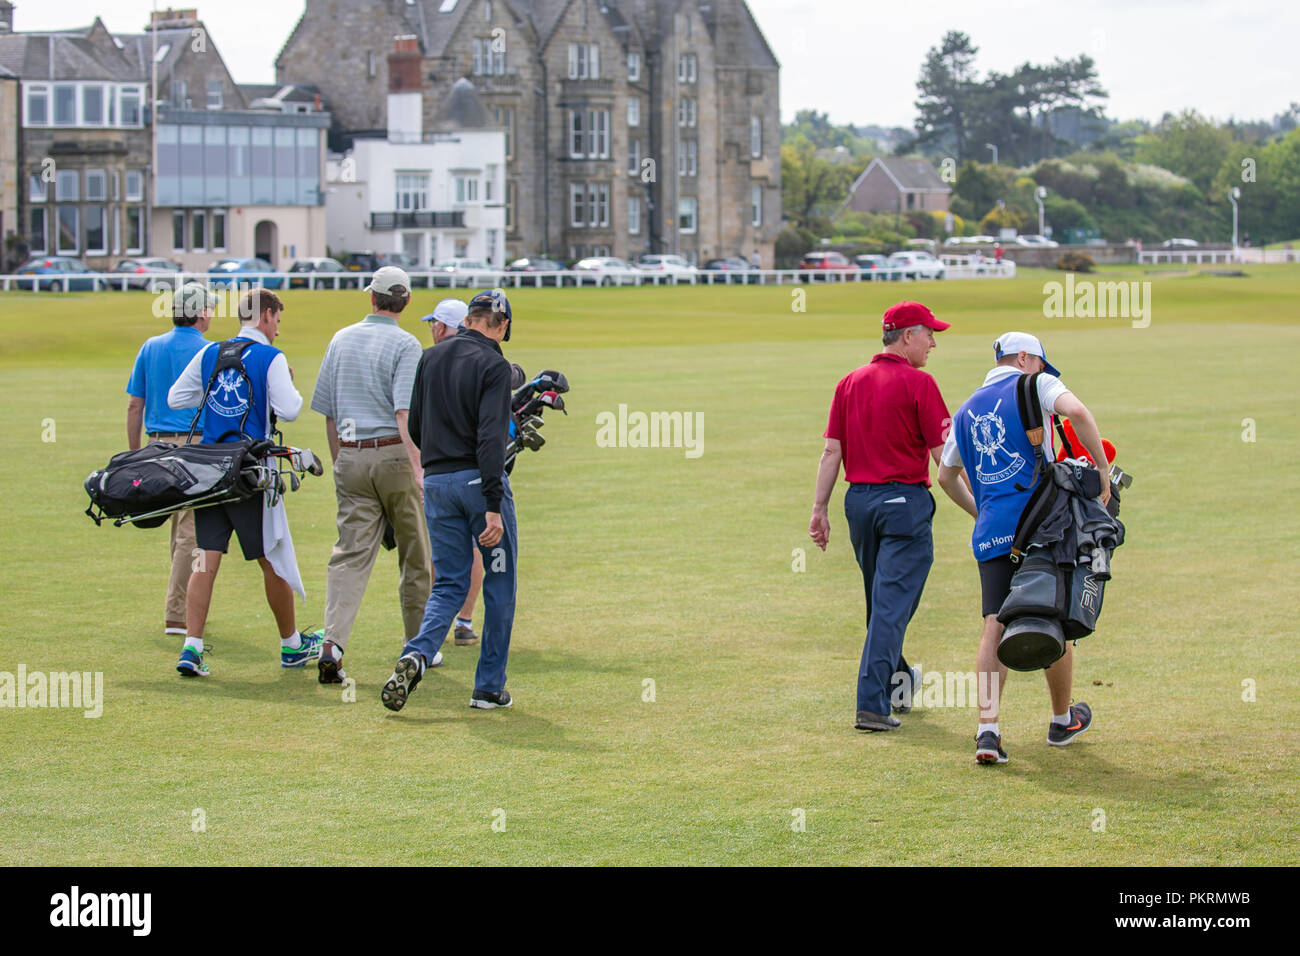 Les gens jouer au golf au célèbre parcours de golf St Andrews, Scotland Banque D'Images